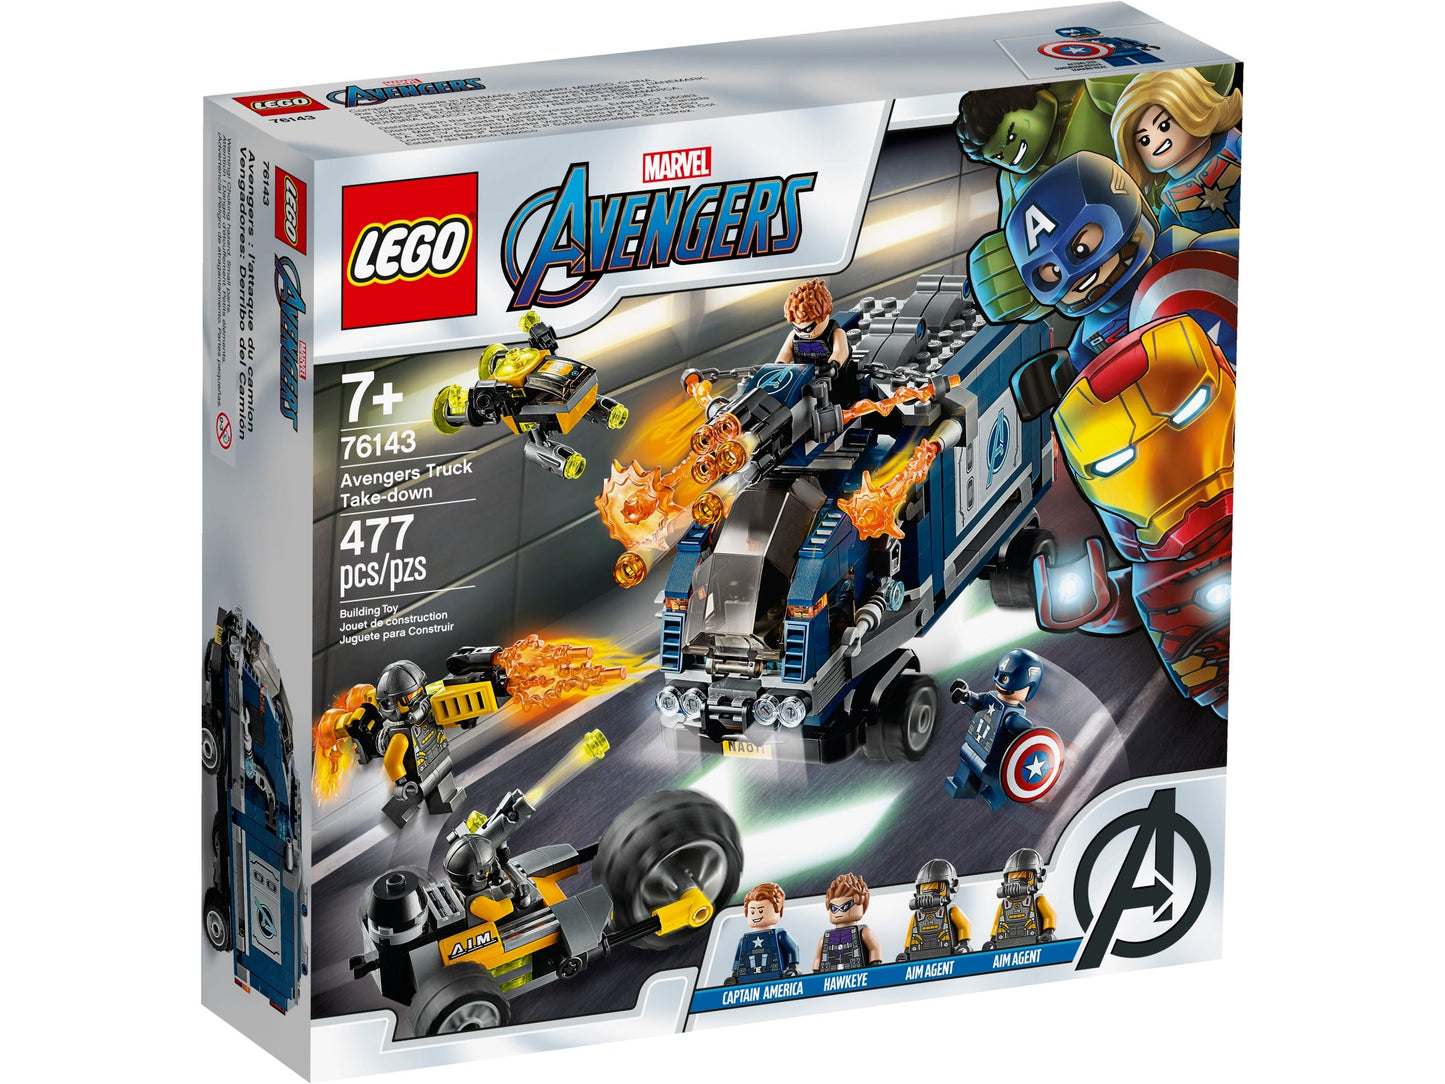 Lego Marvel Avengers Truck Take-down 76143